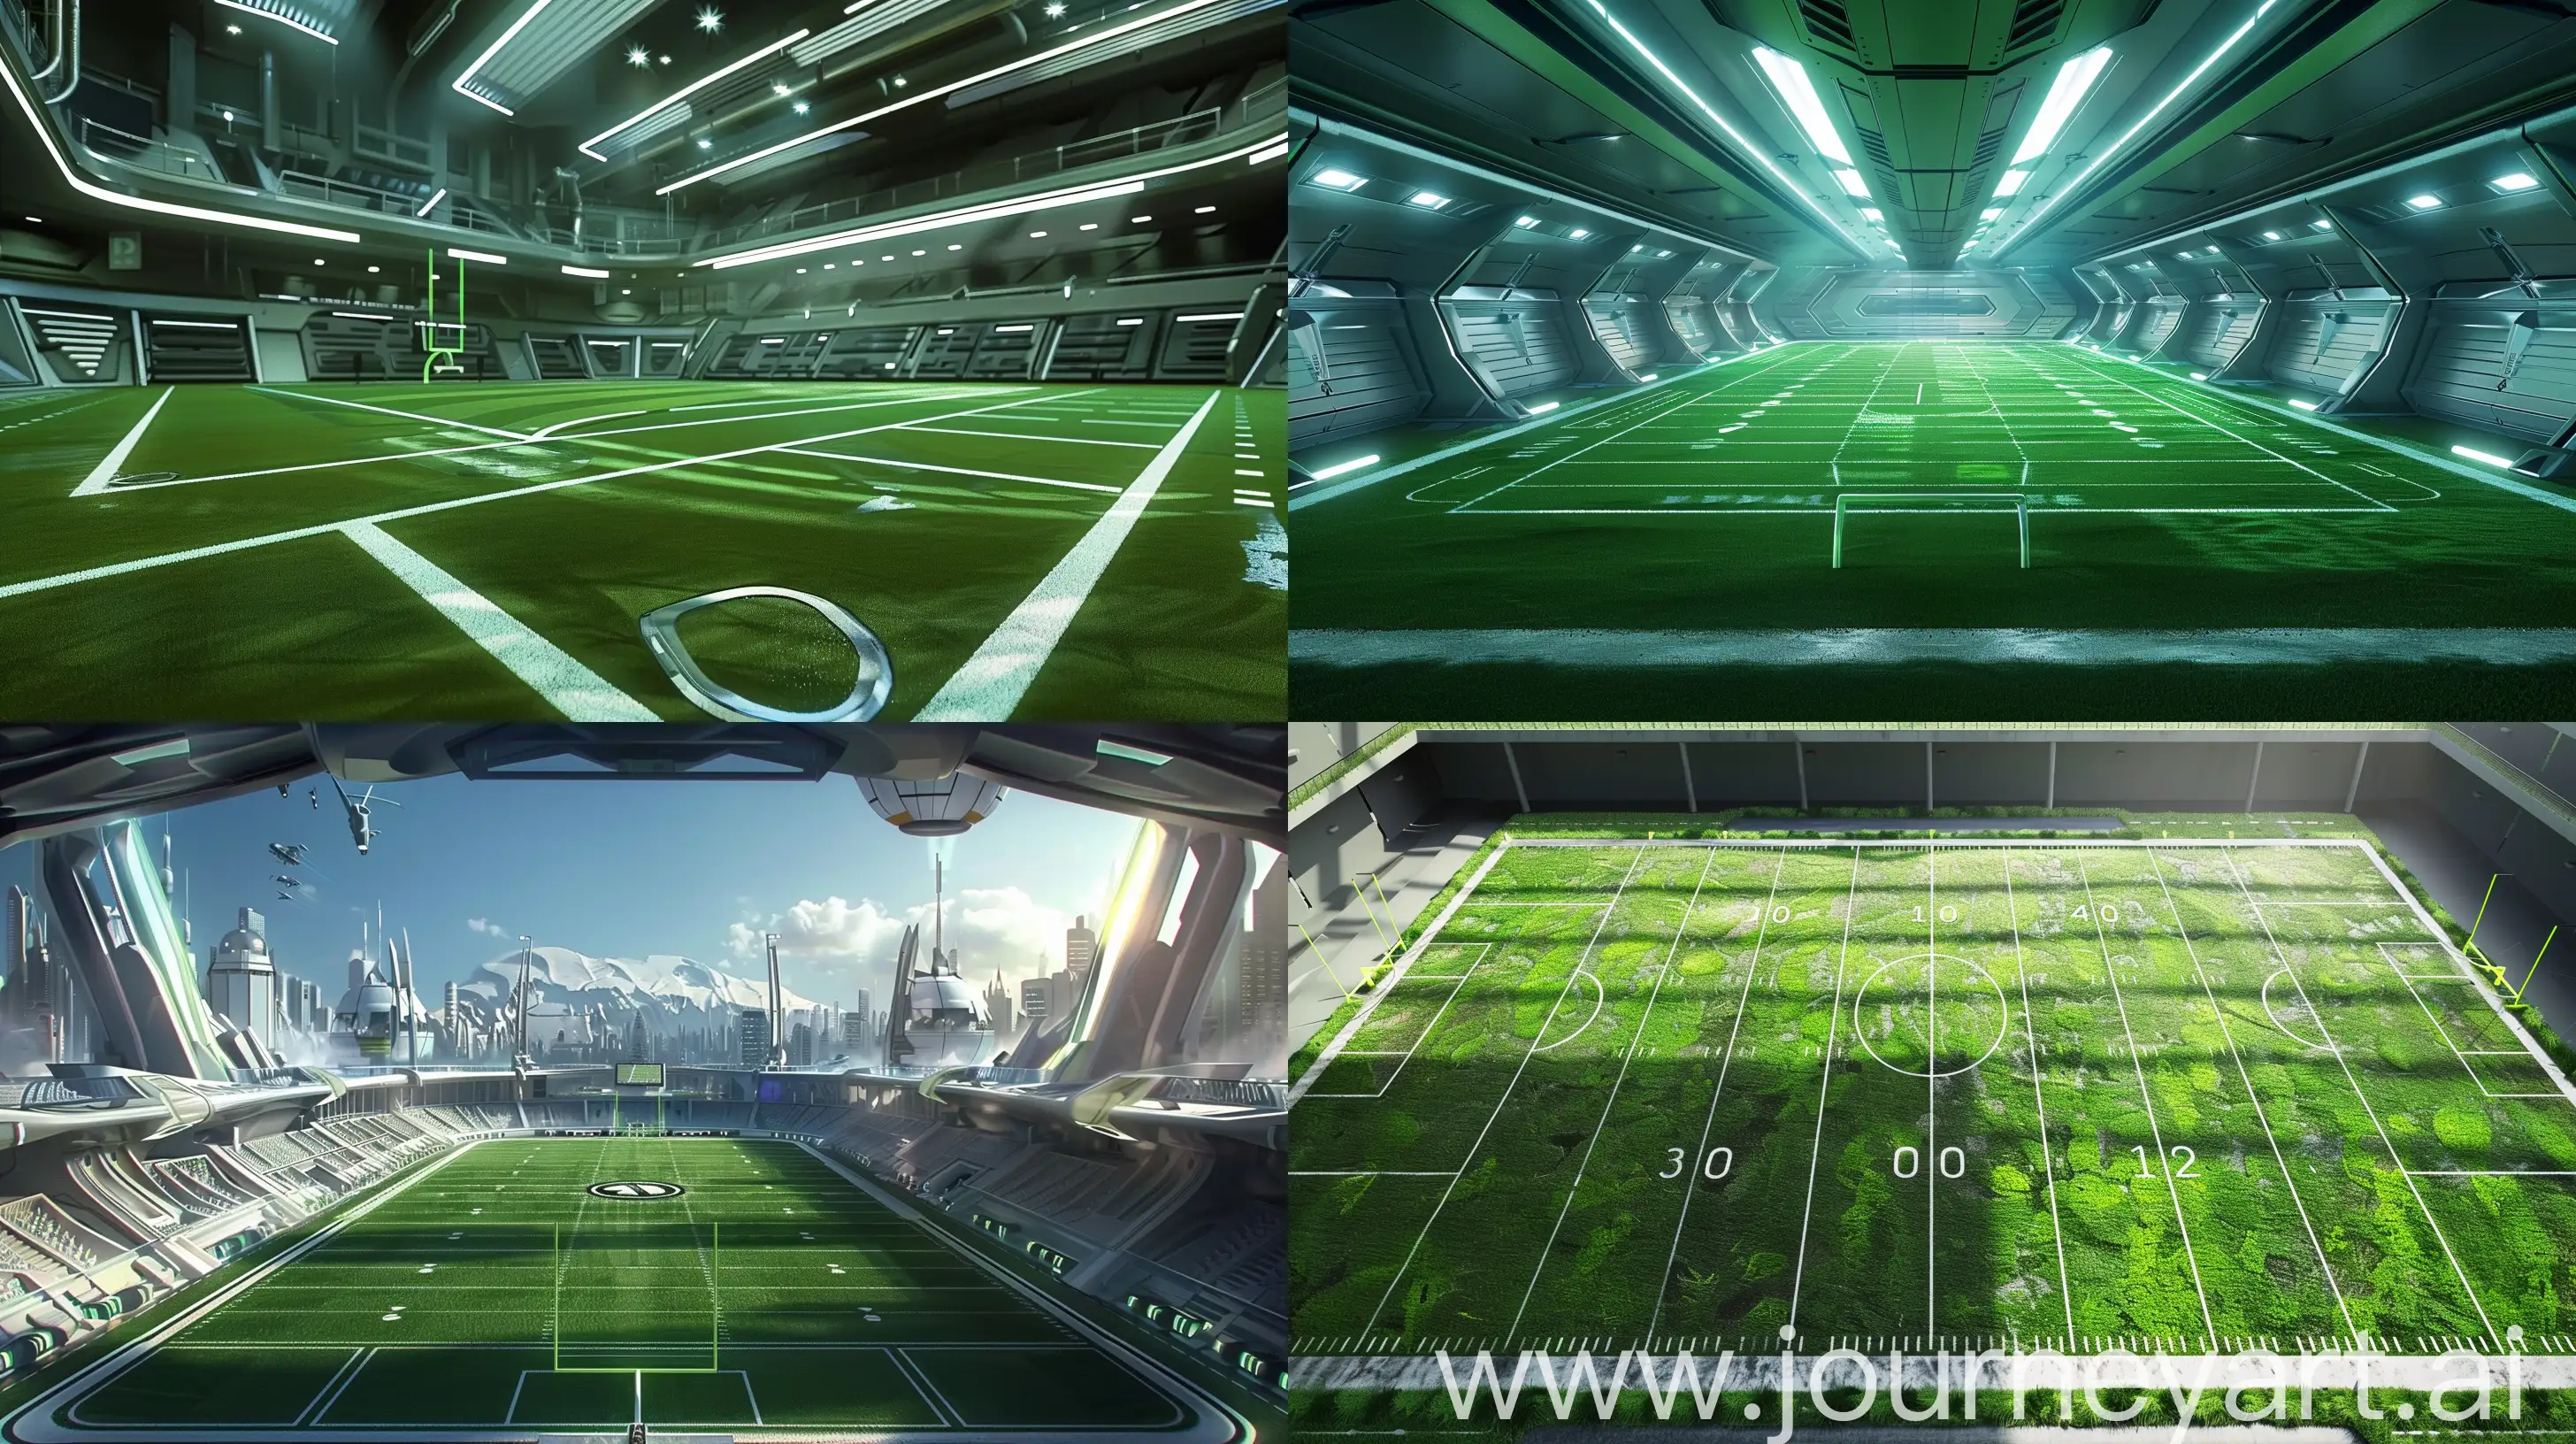 Futuristic-Fantasy-Football-Field-in-Realistic-Style